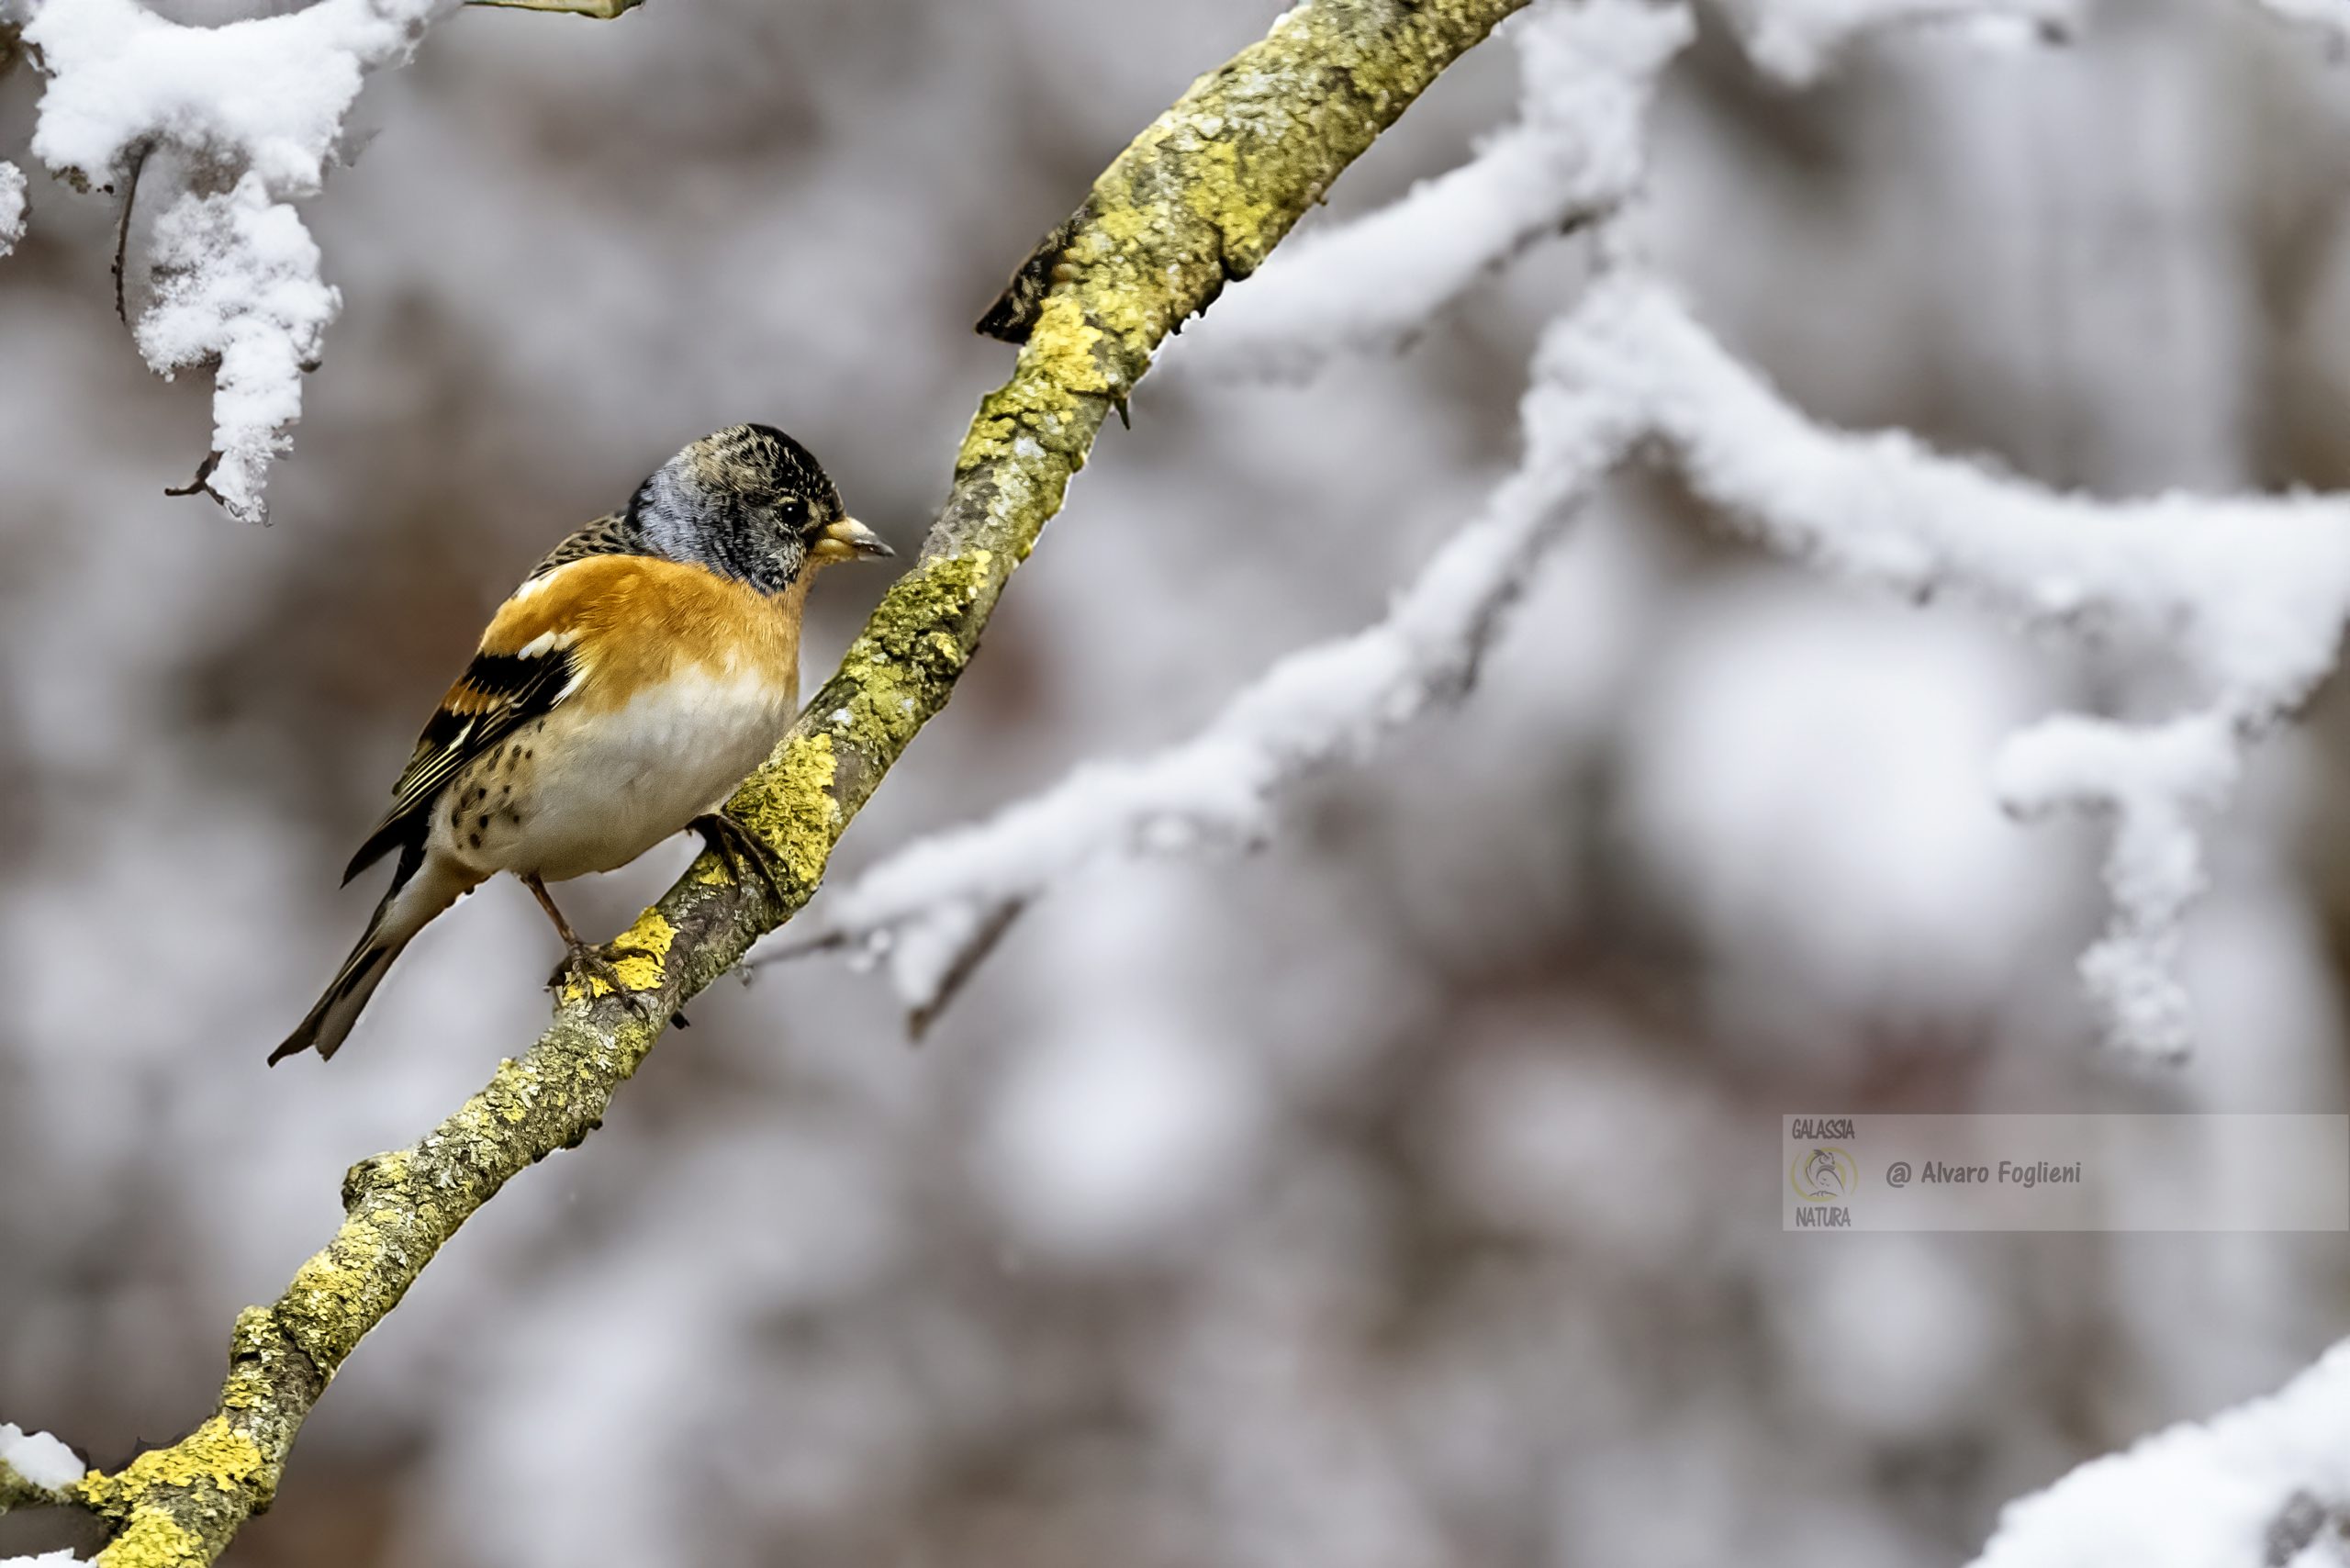 Formato RAW vs JPEG, Disturbo animali selvatici, Etica fotografia wildlife, fotografia di natura invernale